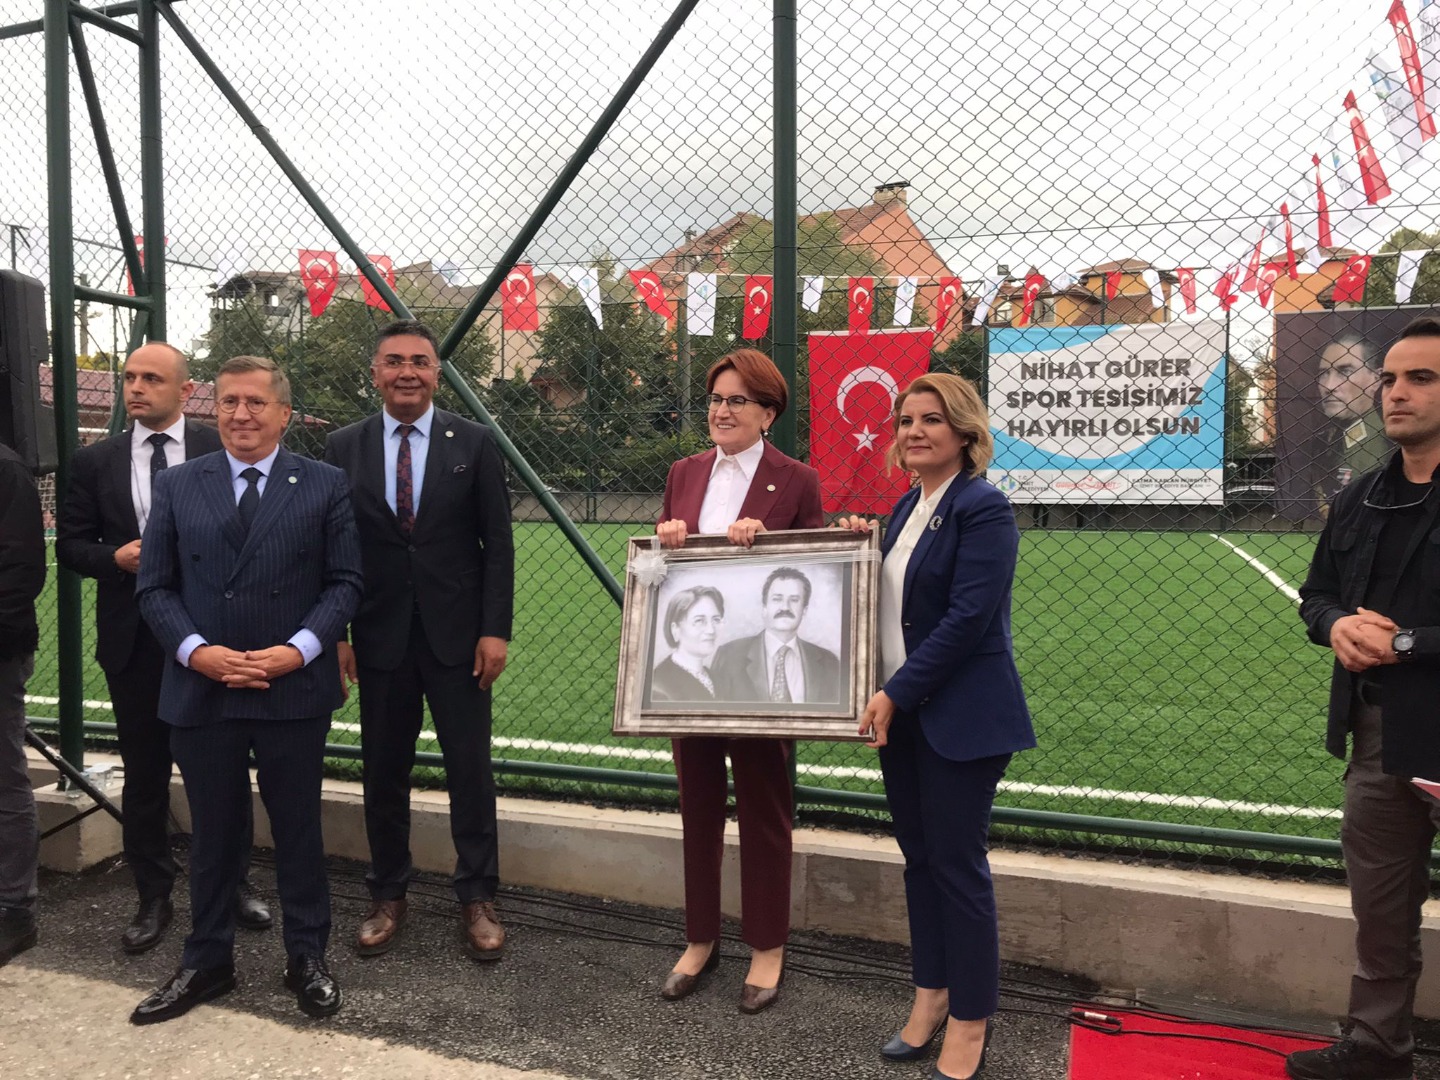 Meral Akşener Kocaeli’nde abisi Nihat Gürer’in adının verildiği tesisin açılışına katıldı